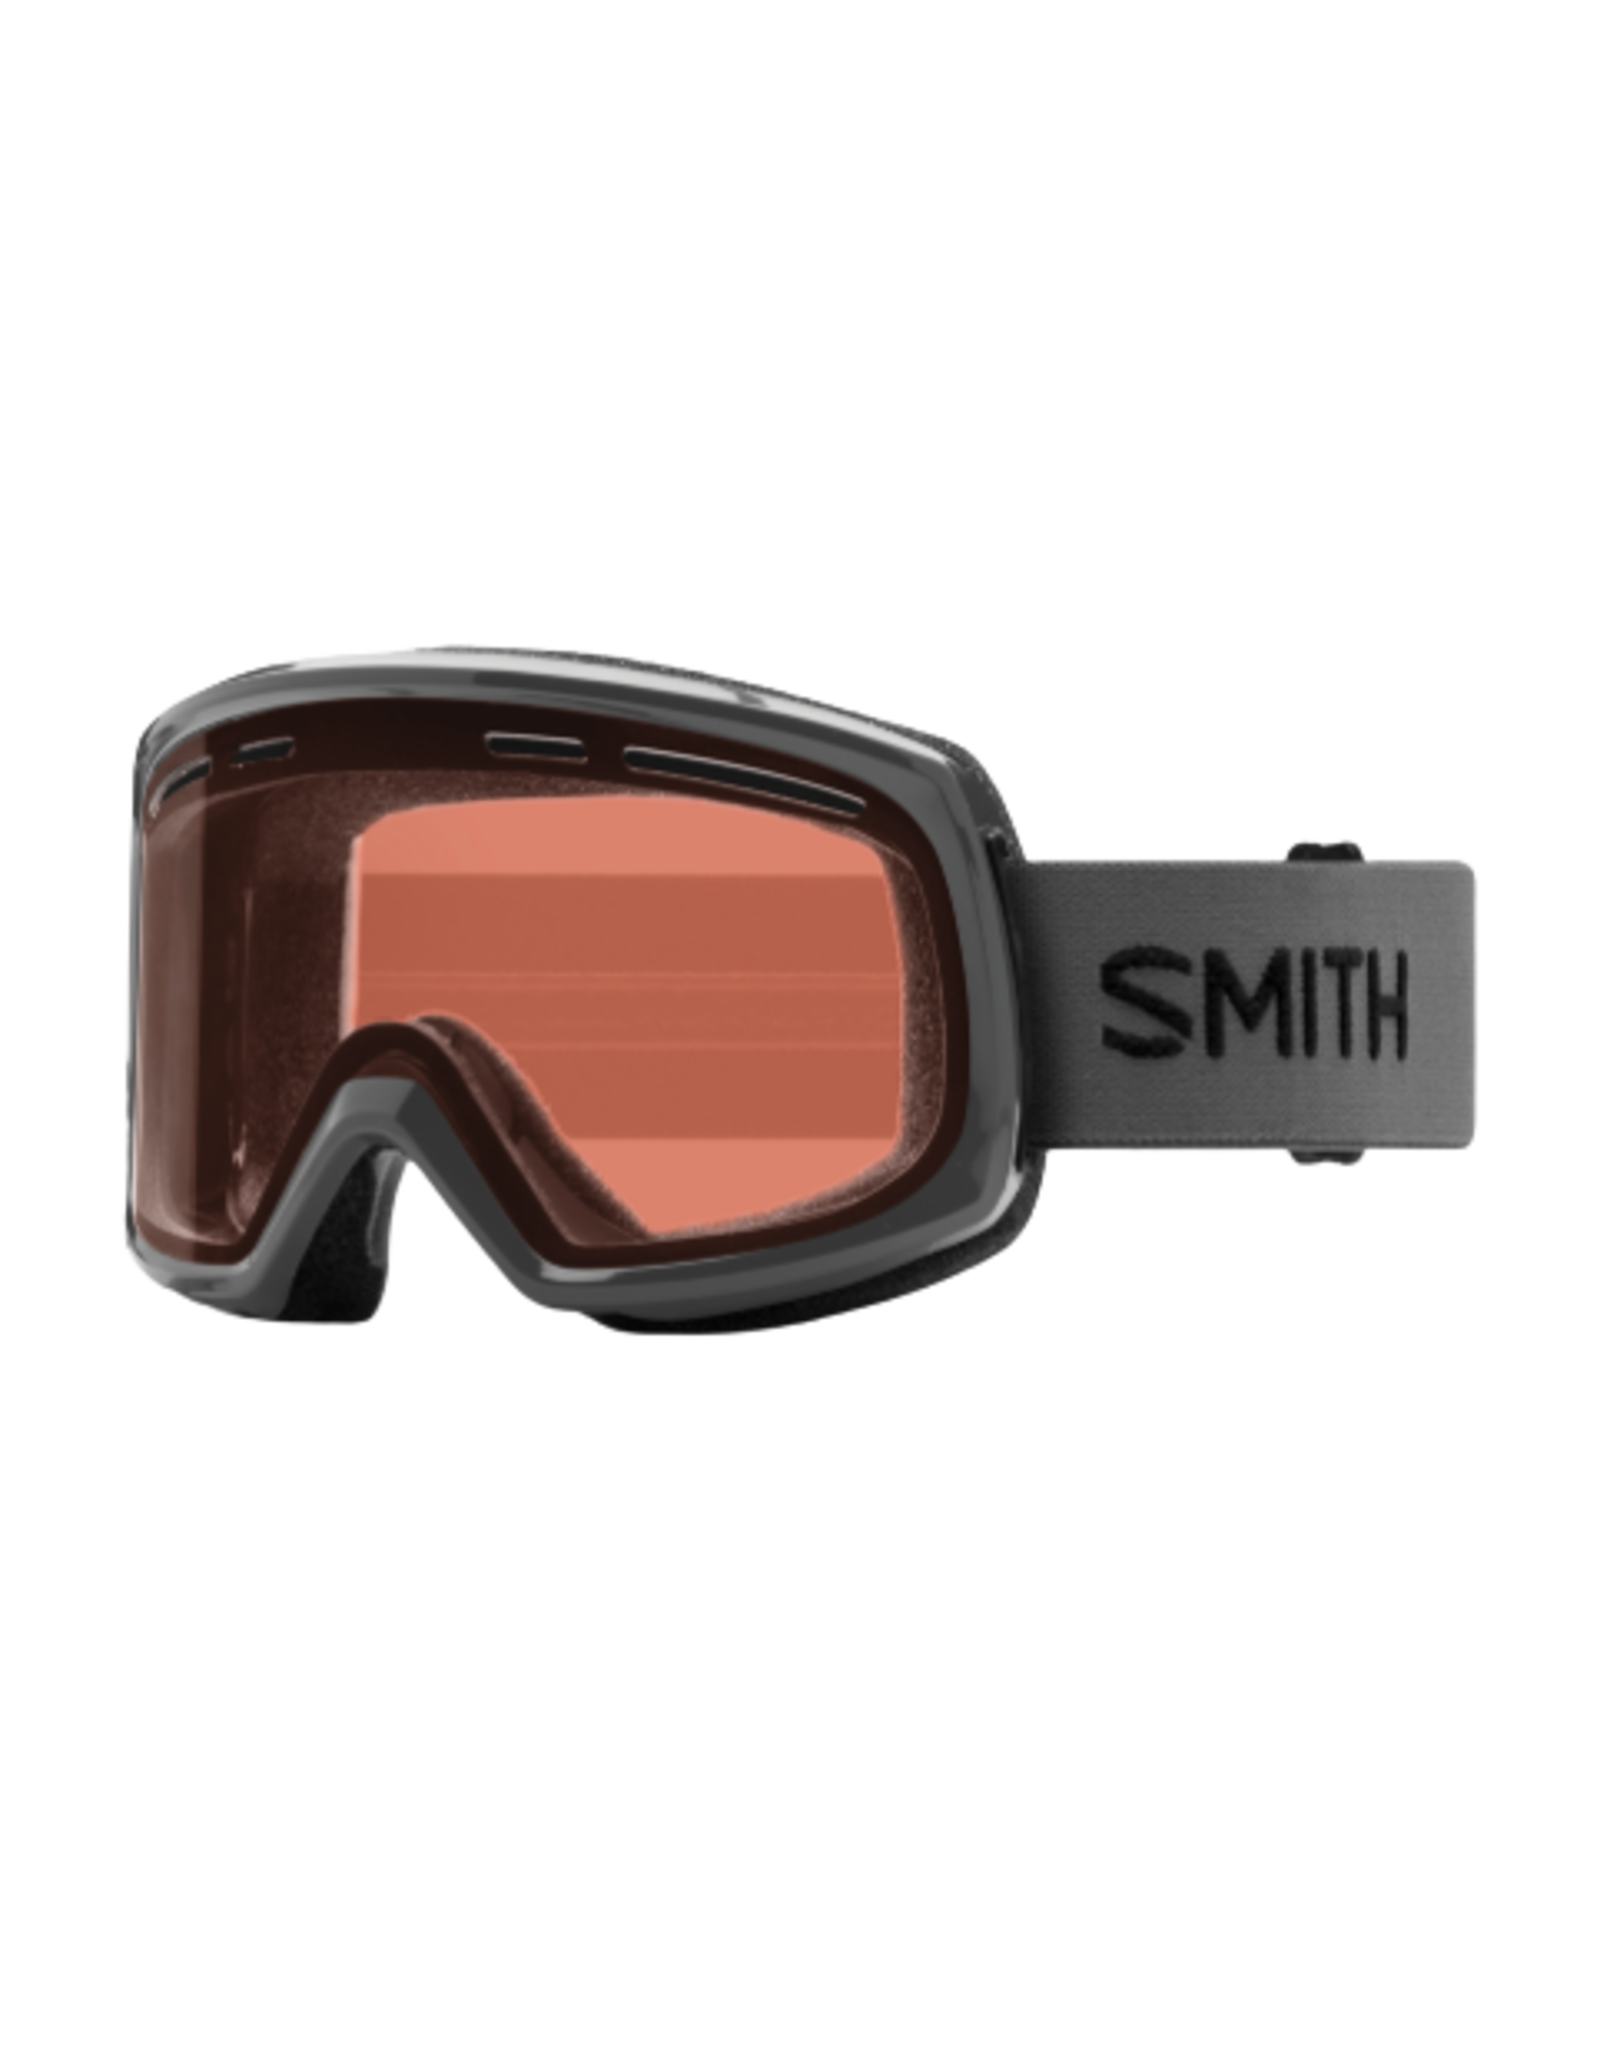 SMITH Goggles 2021, Range